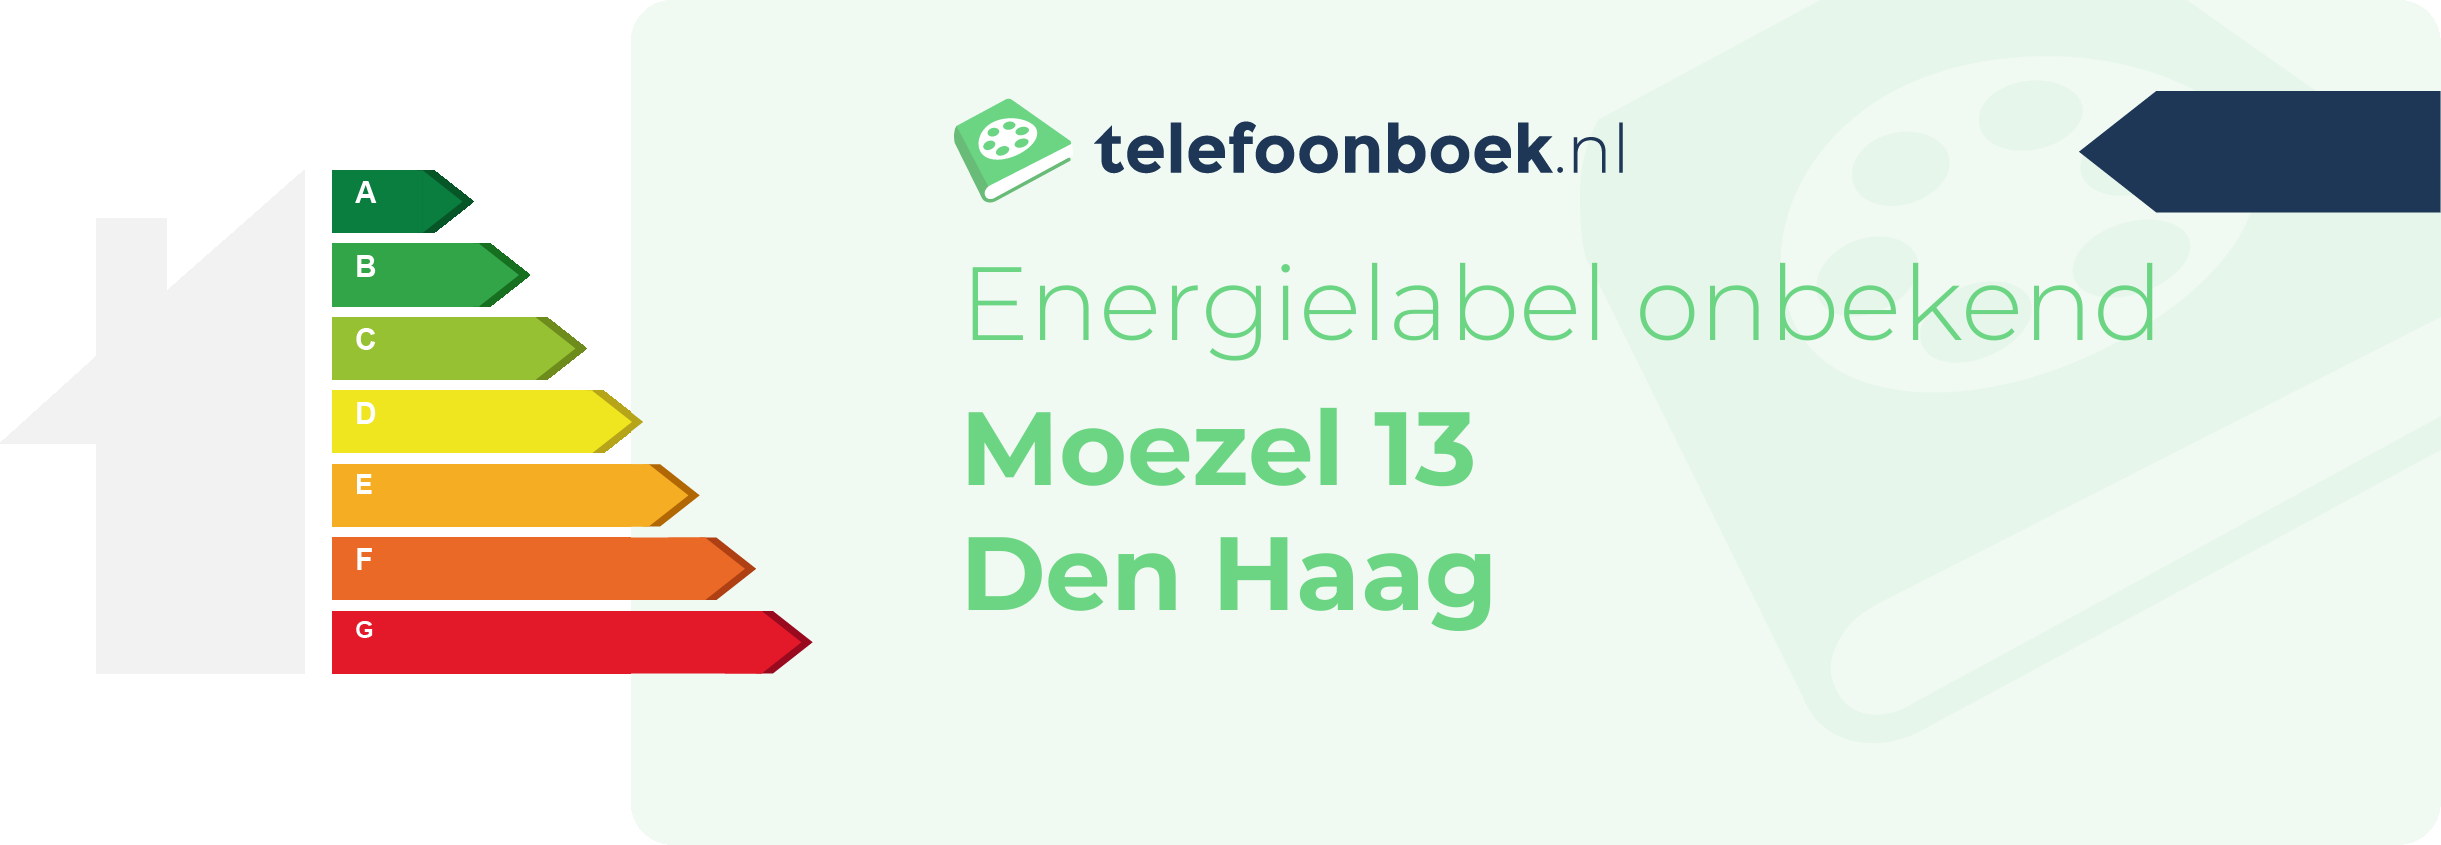 Energielabel Moezel 13 Den Haag